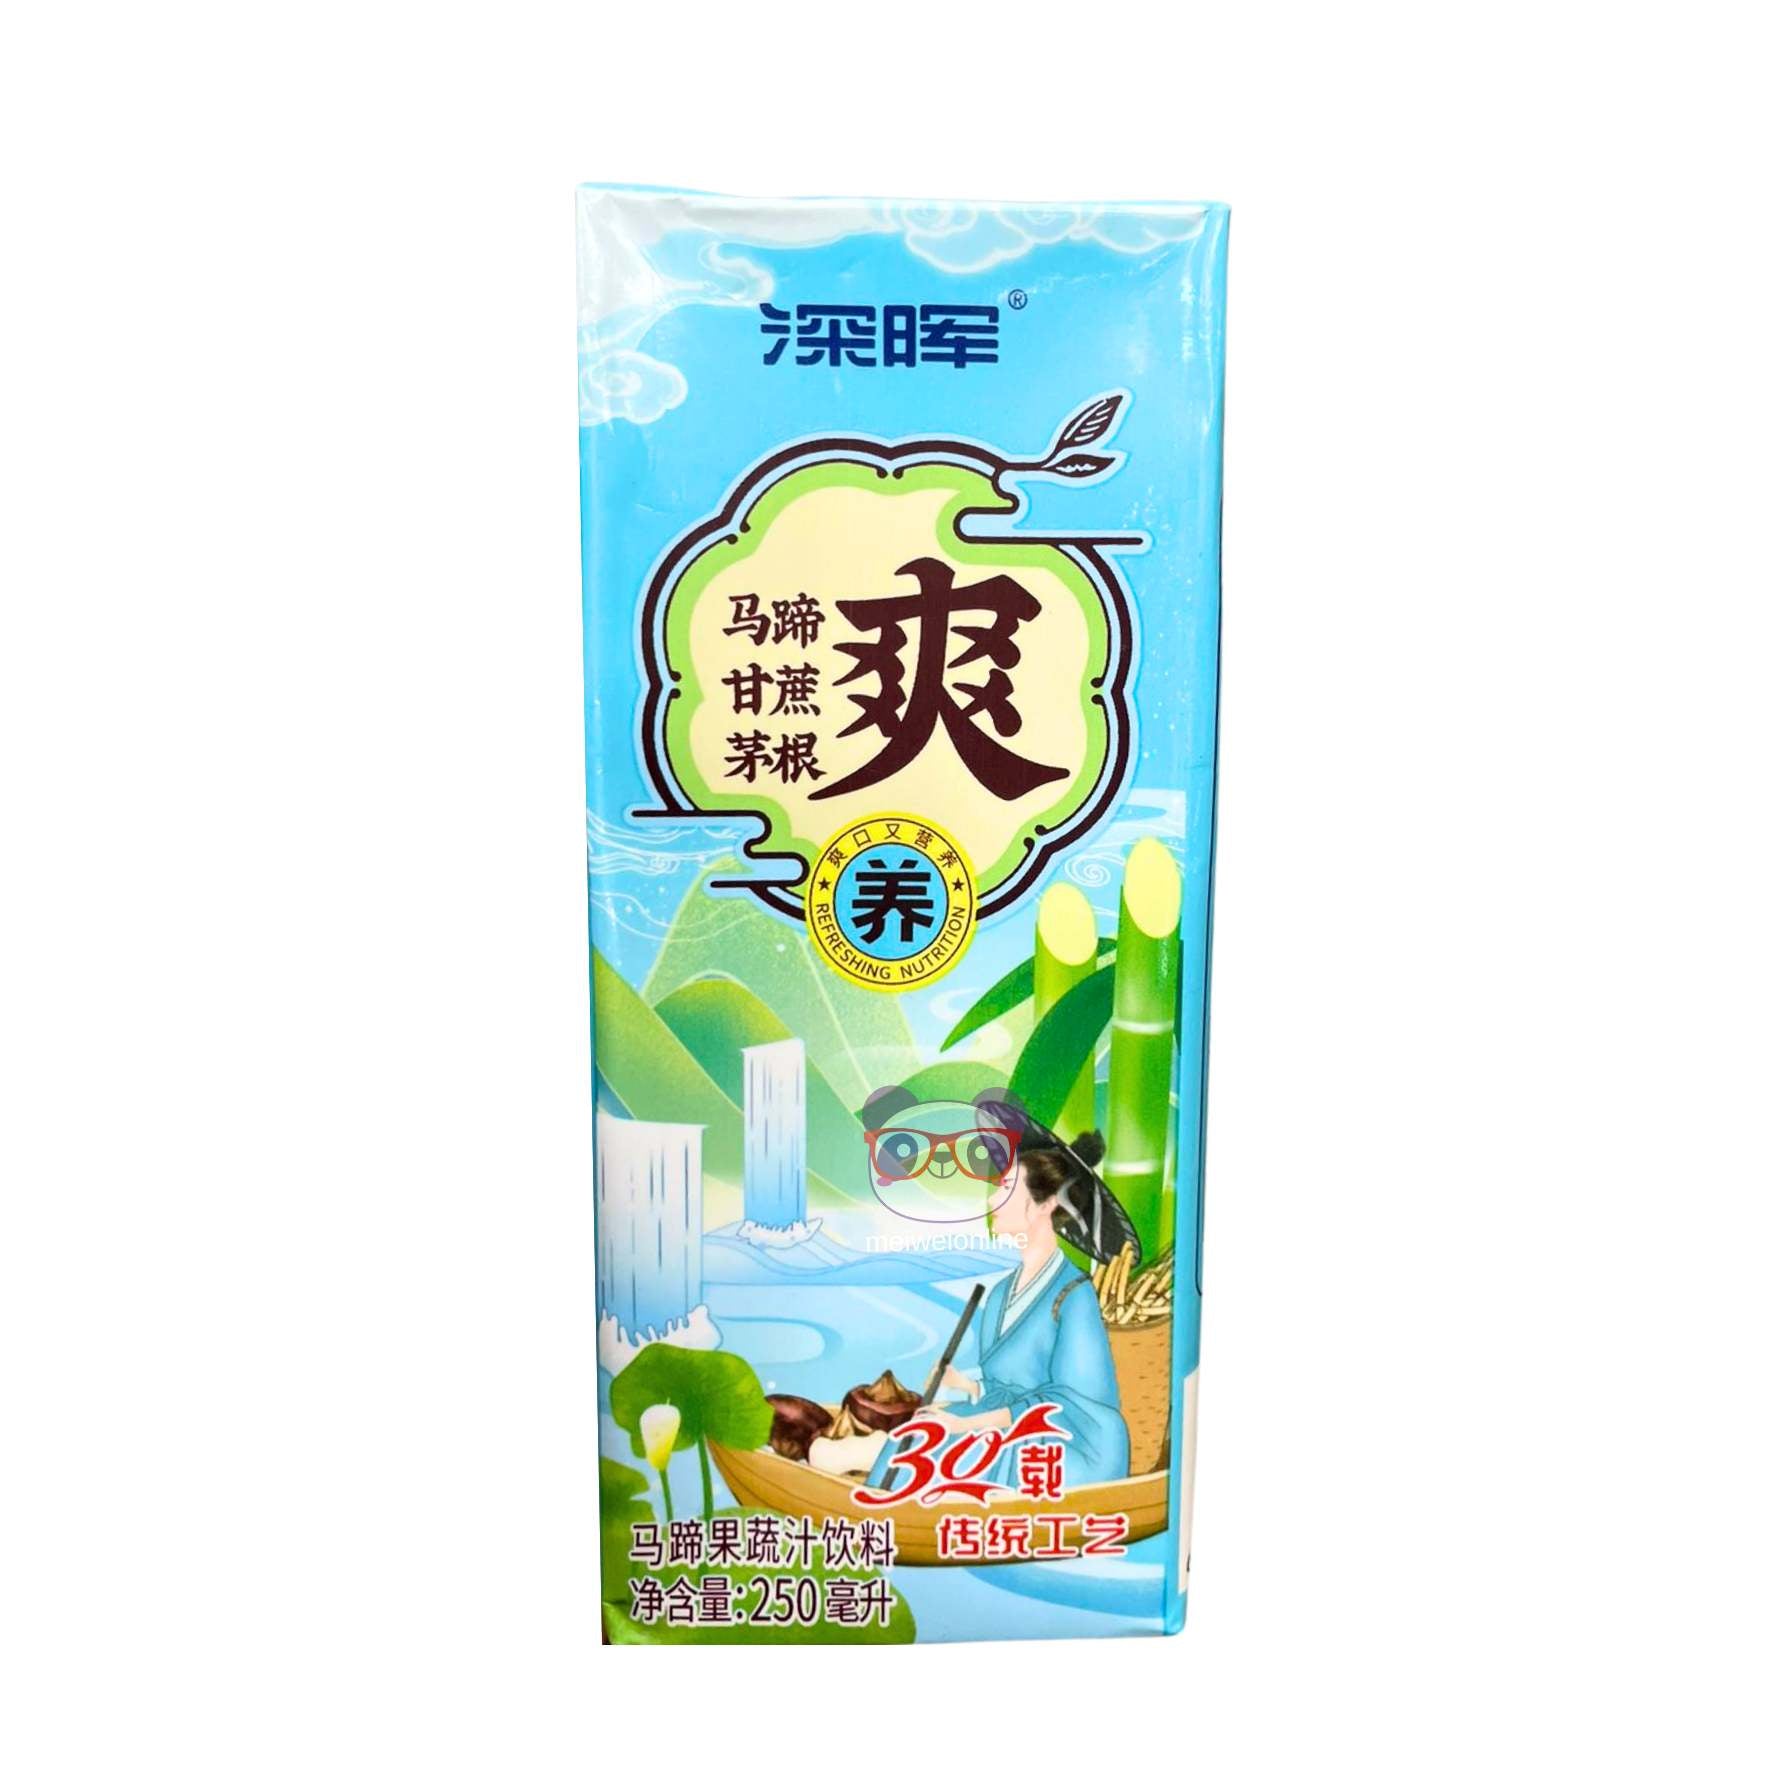 Suco de frutas e vegetais c/ castanha d'água - Shenhui 250ml